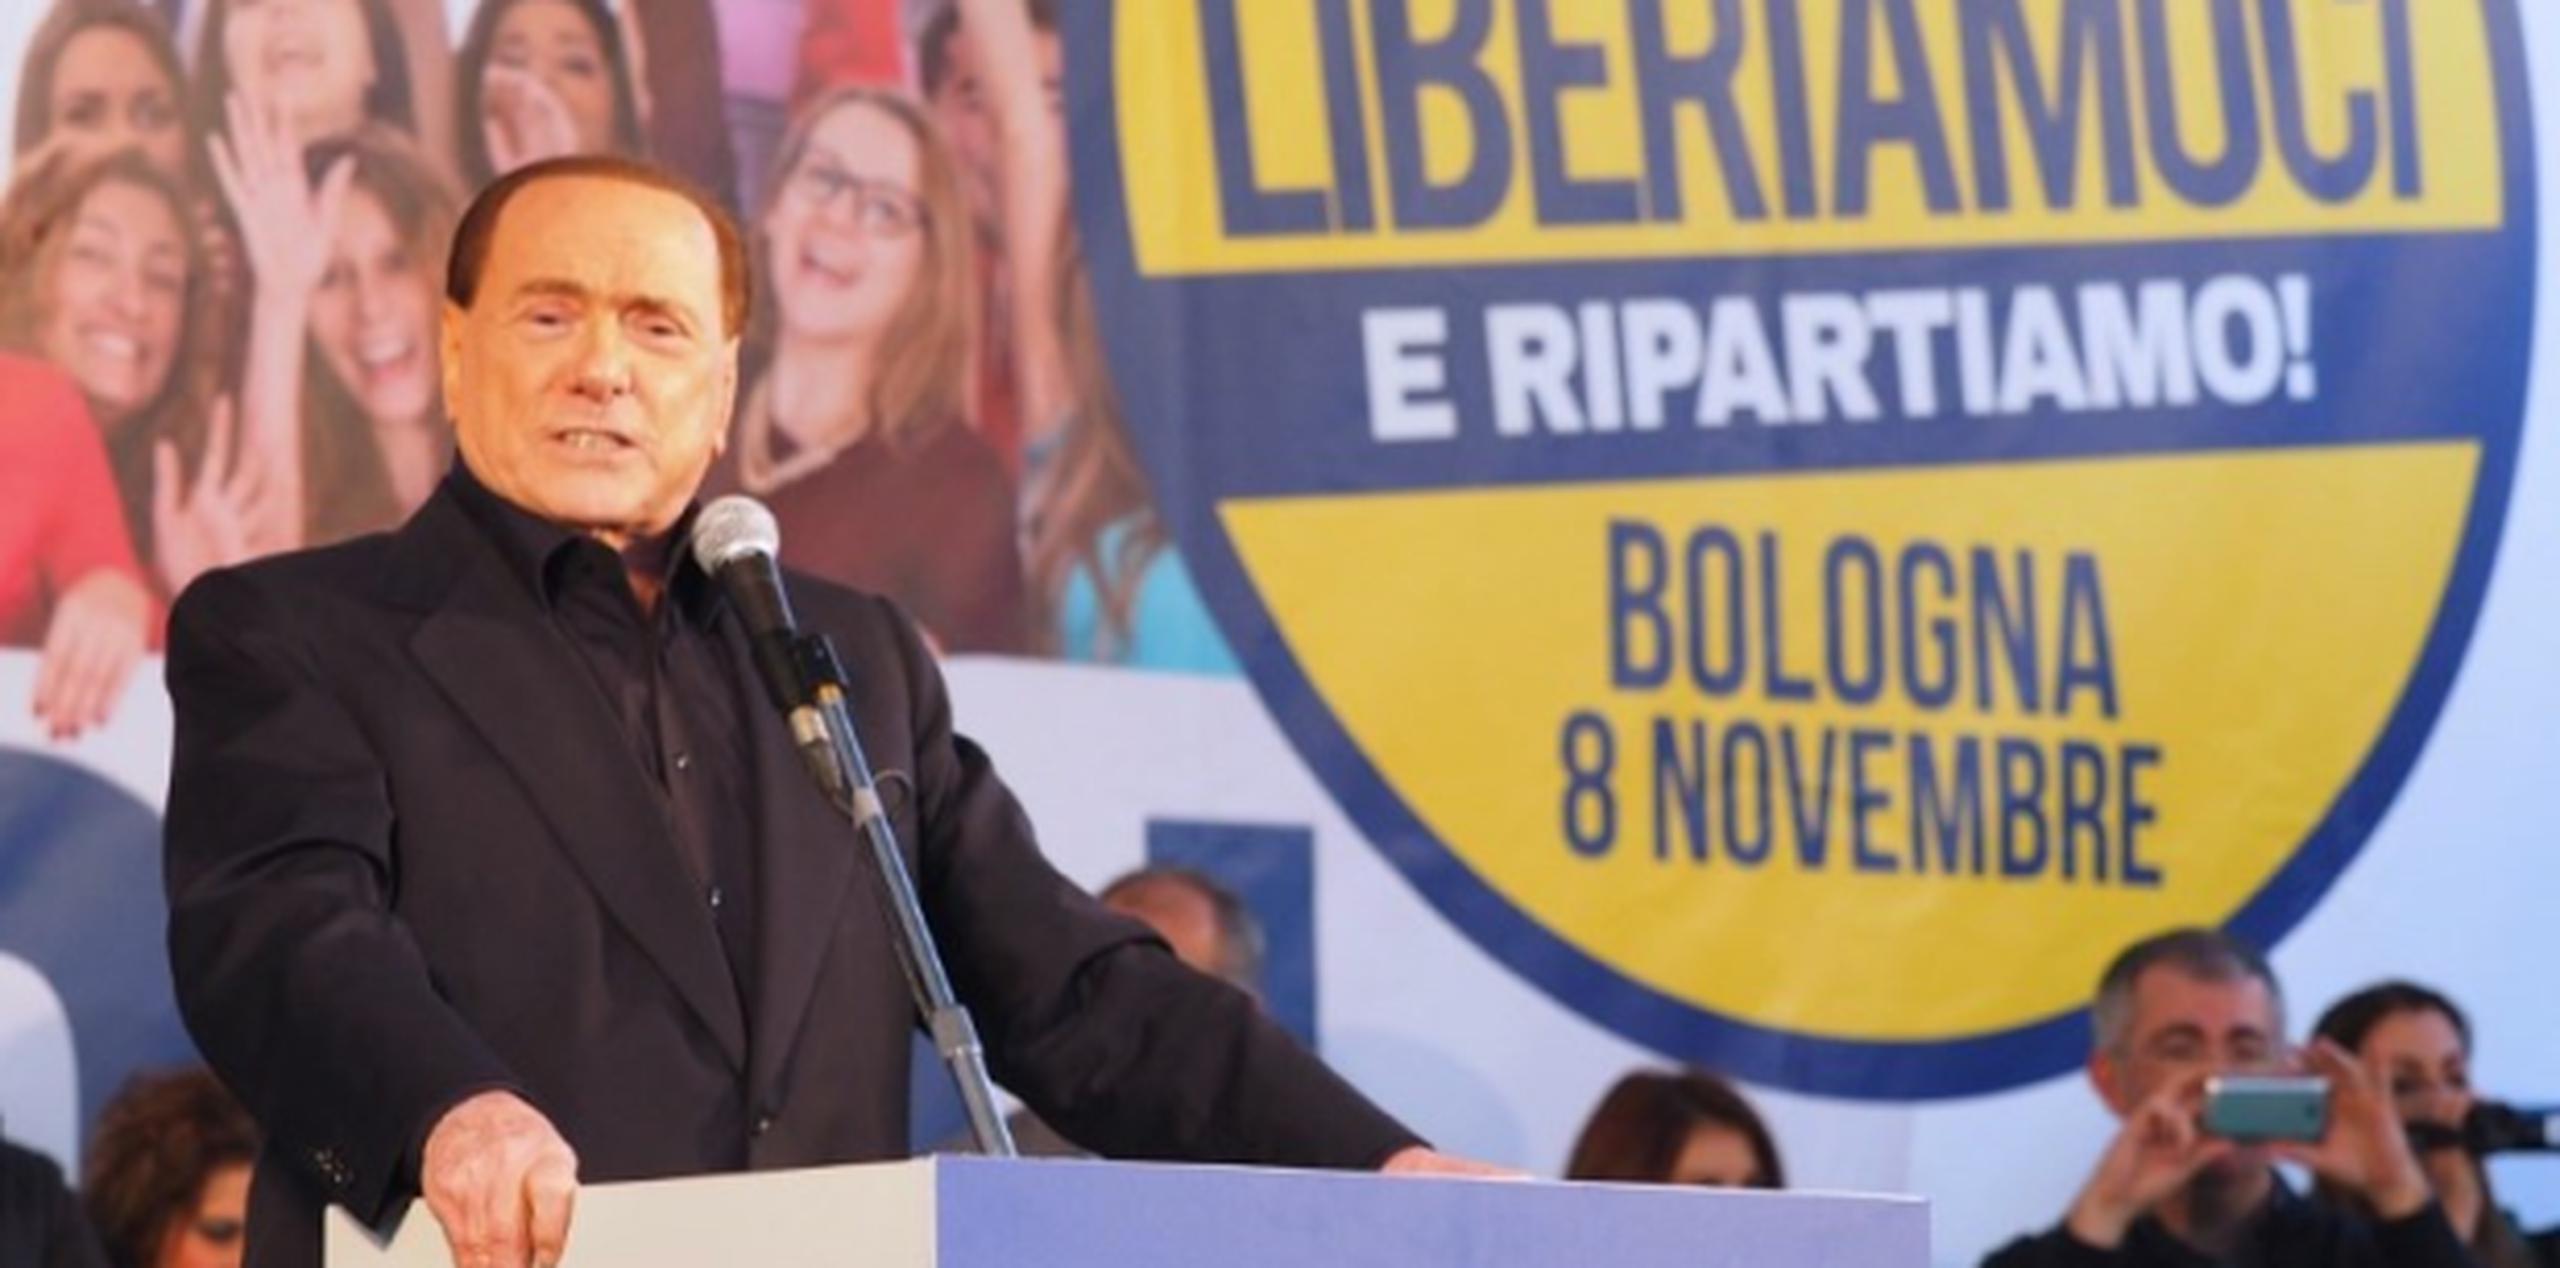 Berlusconi trata de regresar al poder a pesar de que fue procesado judicialmente por fraude fiscal durante su gobierno. (AFP)